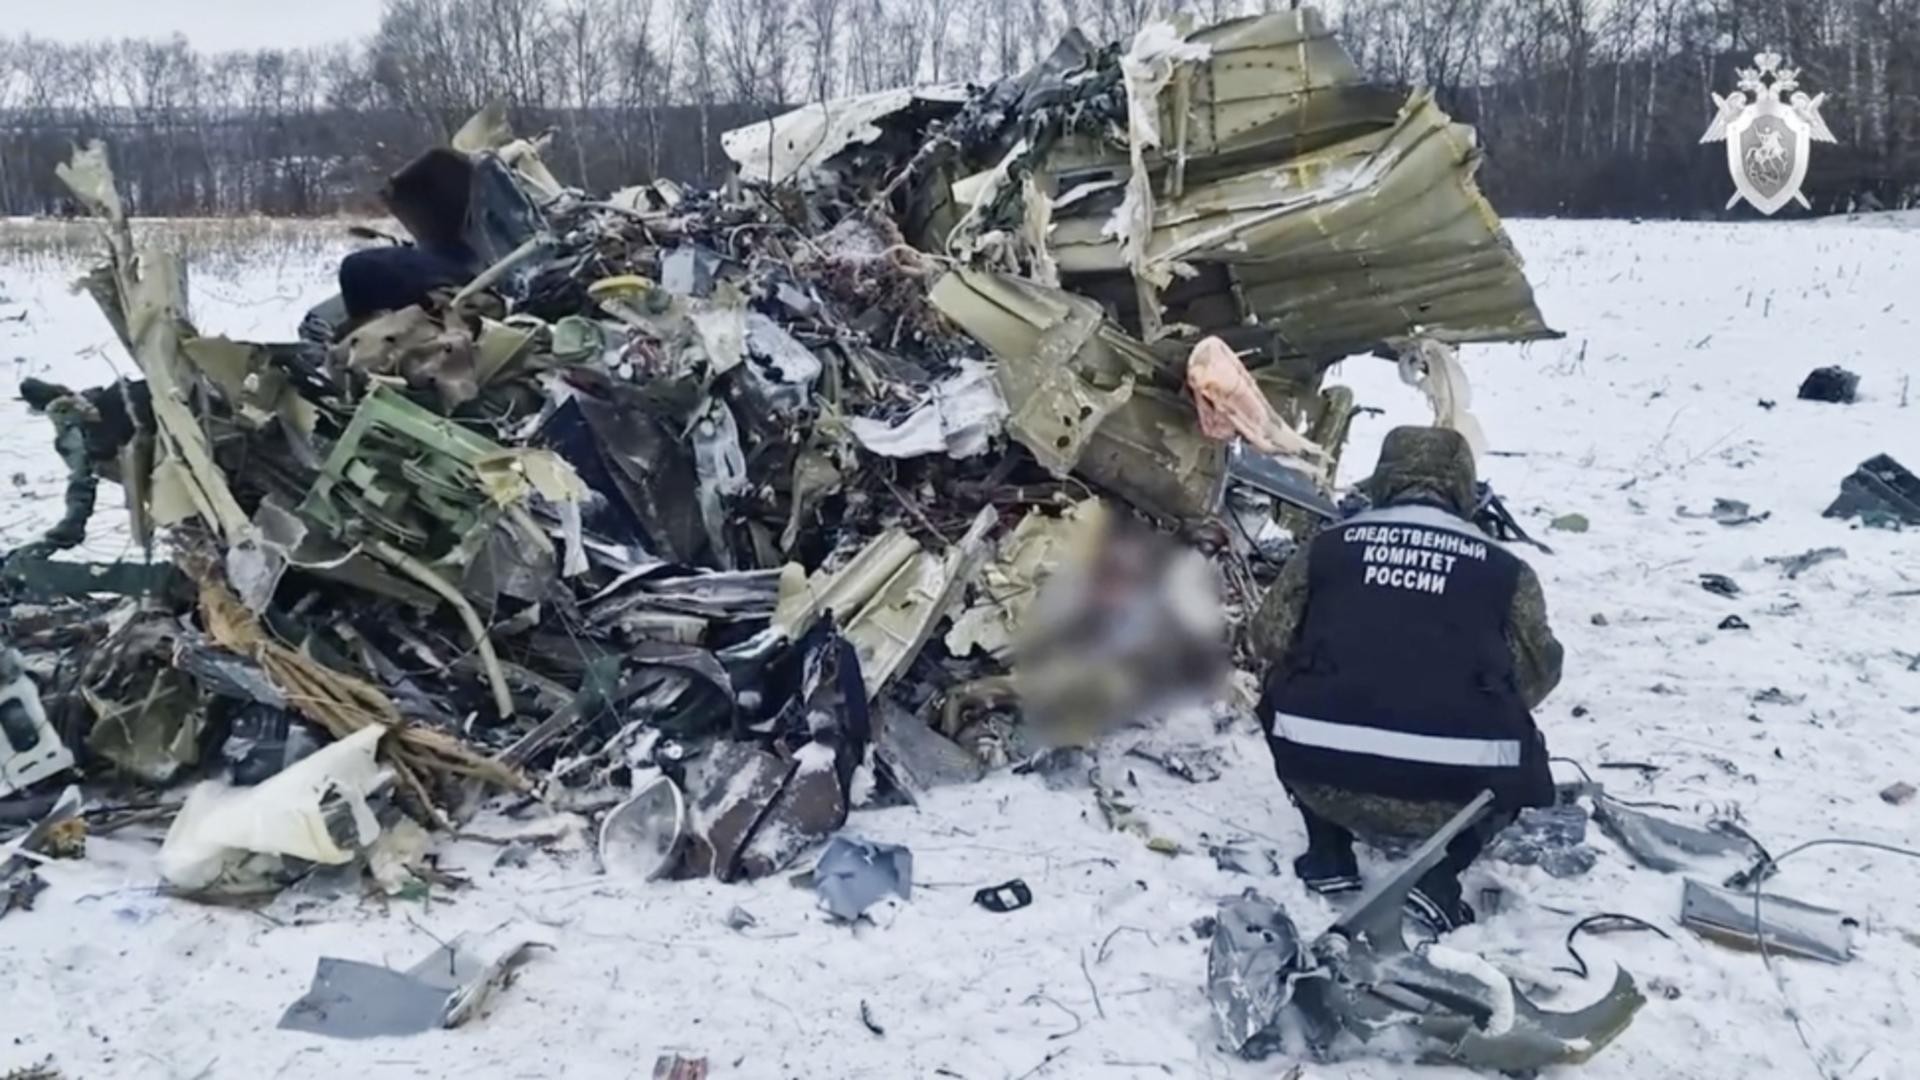 Ucraina acuză Rusia de dezinformare în urma accidentului aviatic “cu zeci de victime”. Este solicitată o anchetă internațională